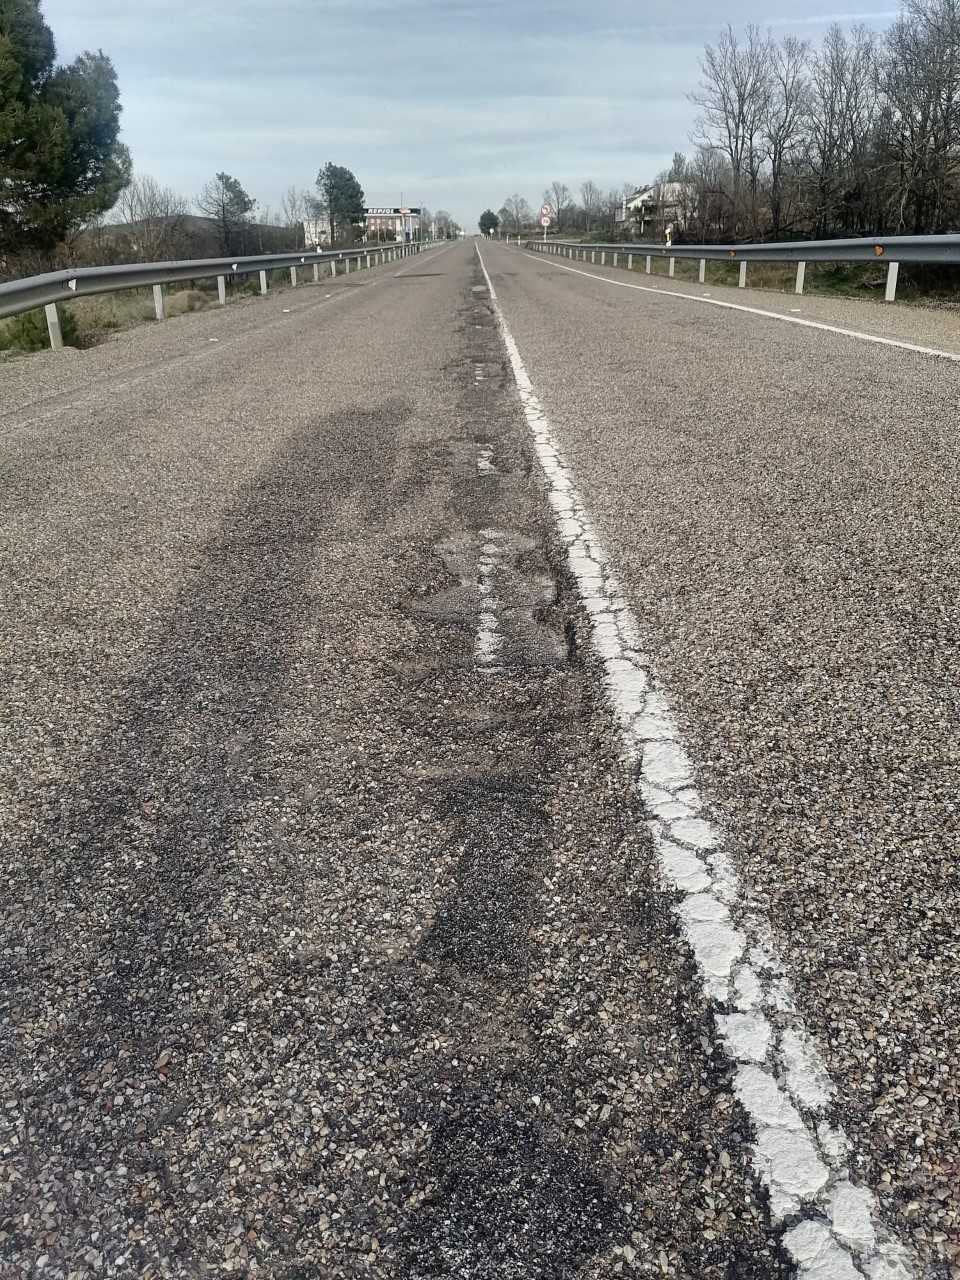 Denuncian el estado “lamentable” del tramo de la carretera N 631 entre Tábara y Rionegro del Puente